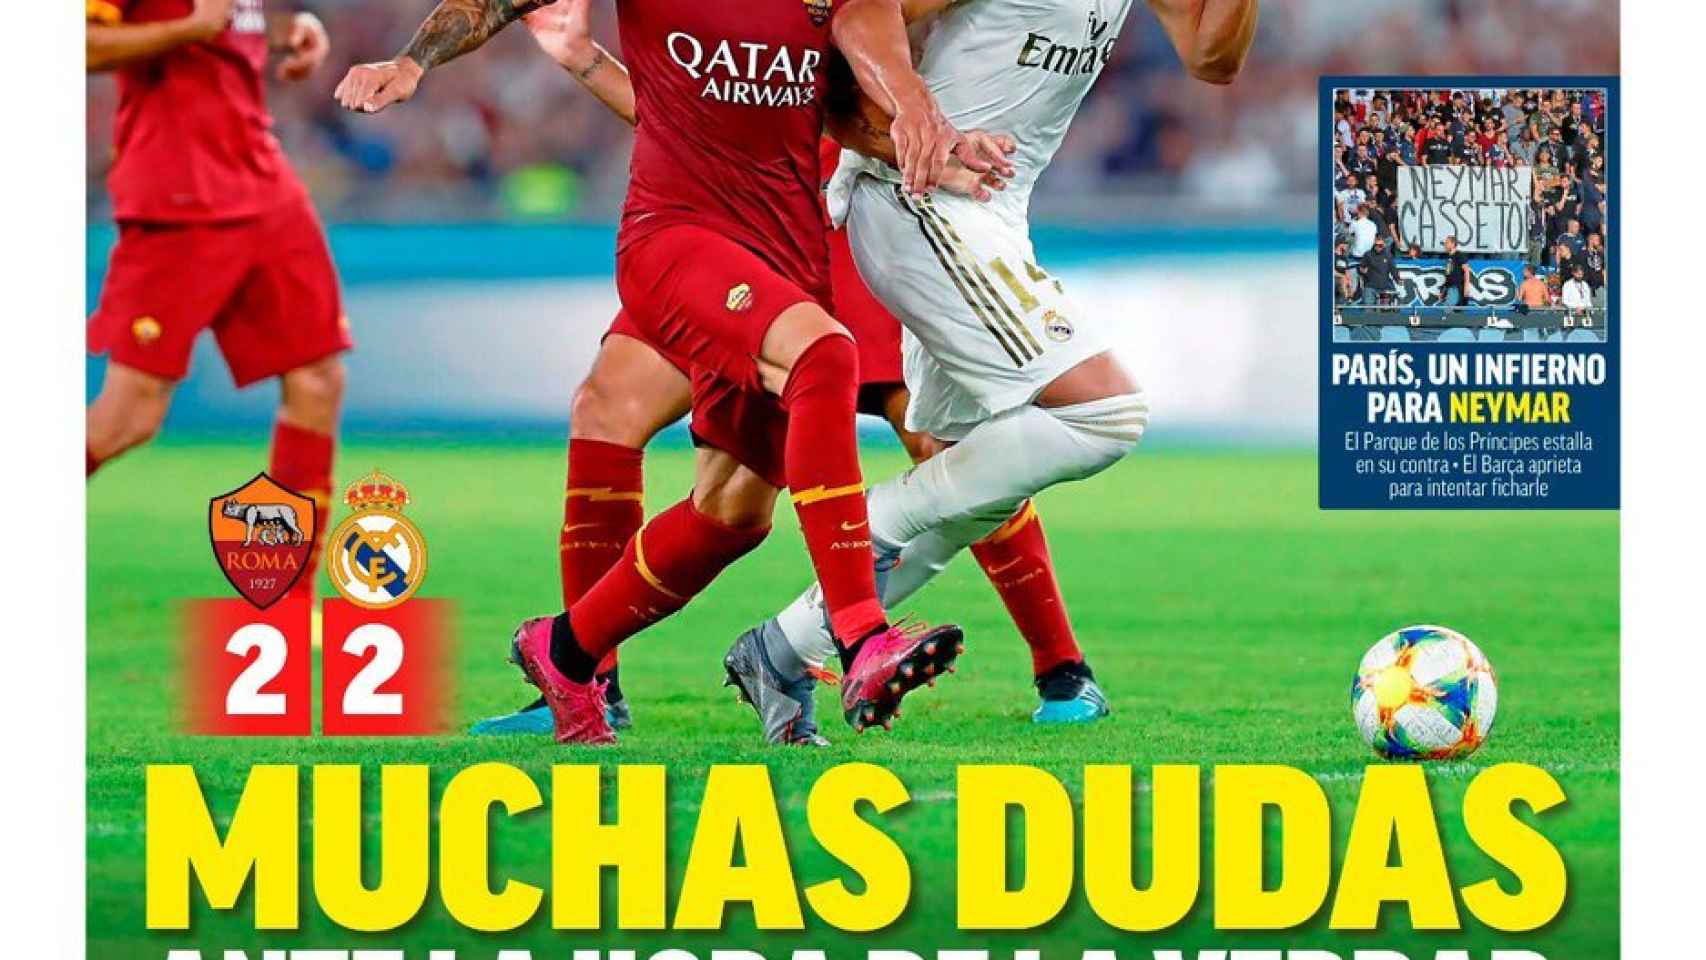 La portada del diario MARCA (12/08/2019)